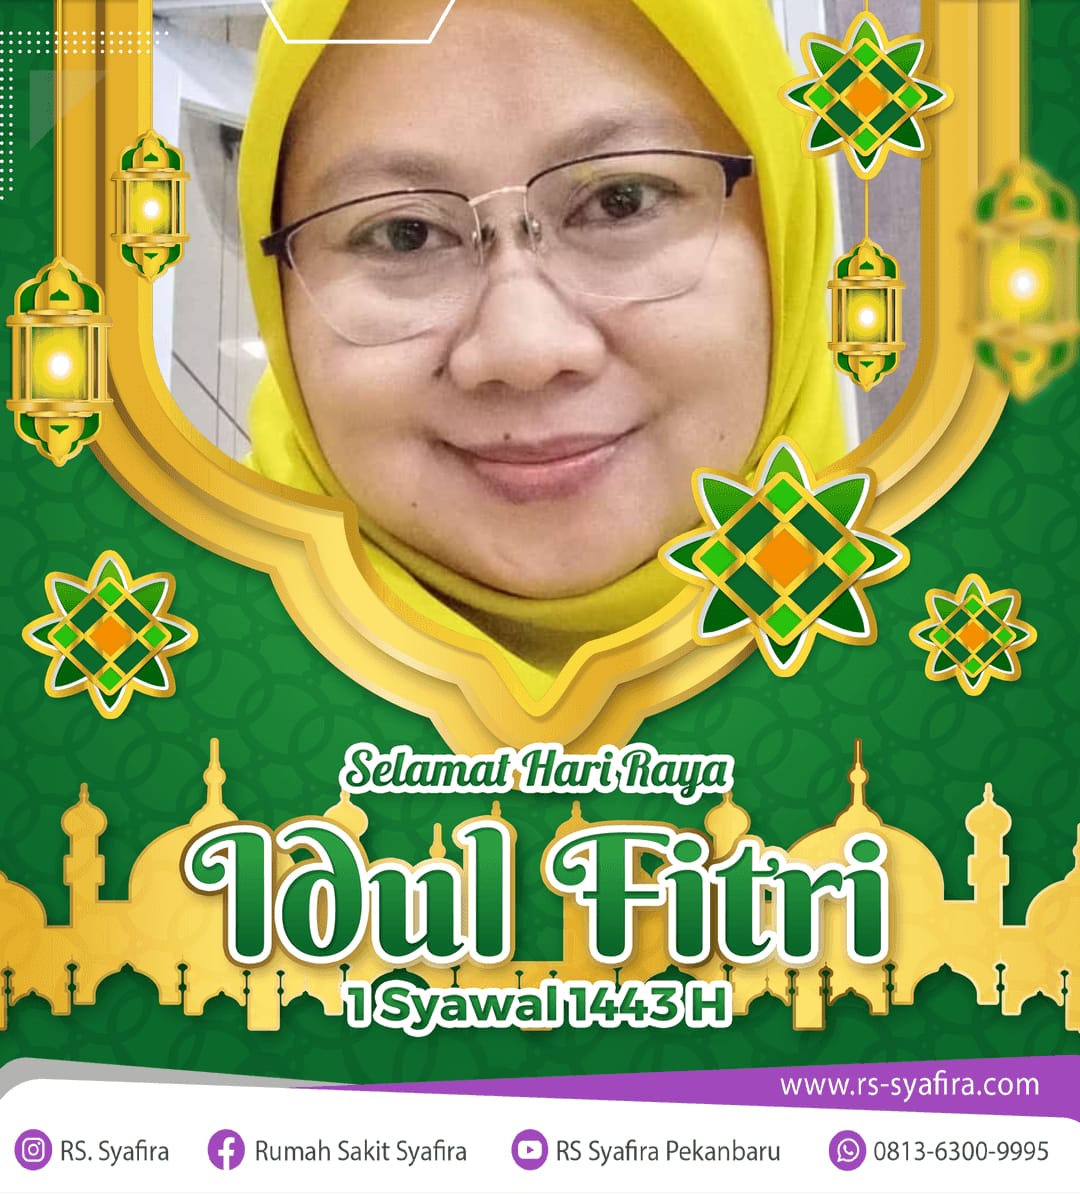 Selamat Idul Fitri dari Ibu Mariyani